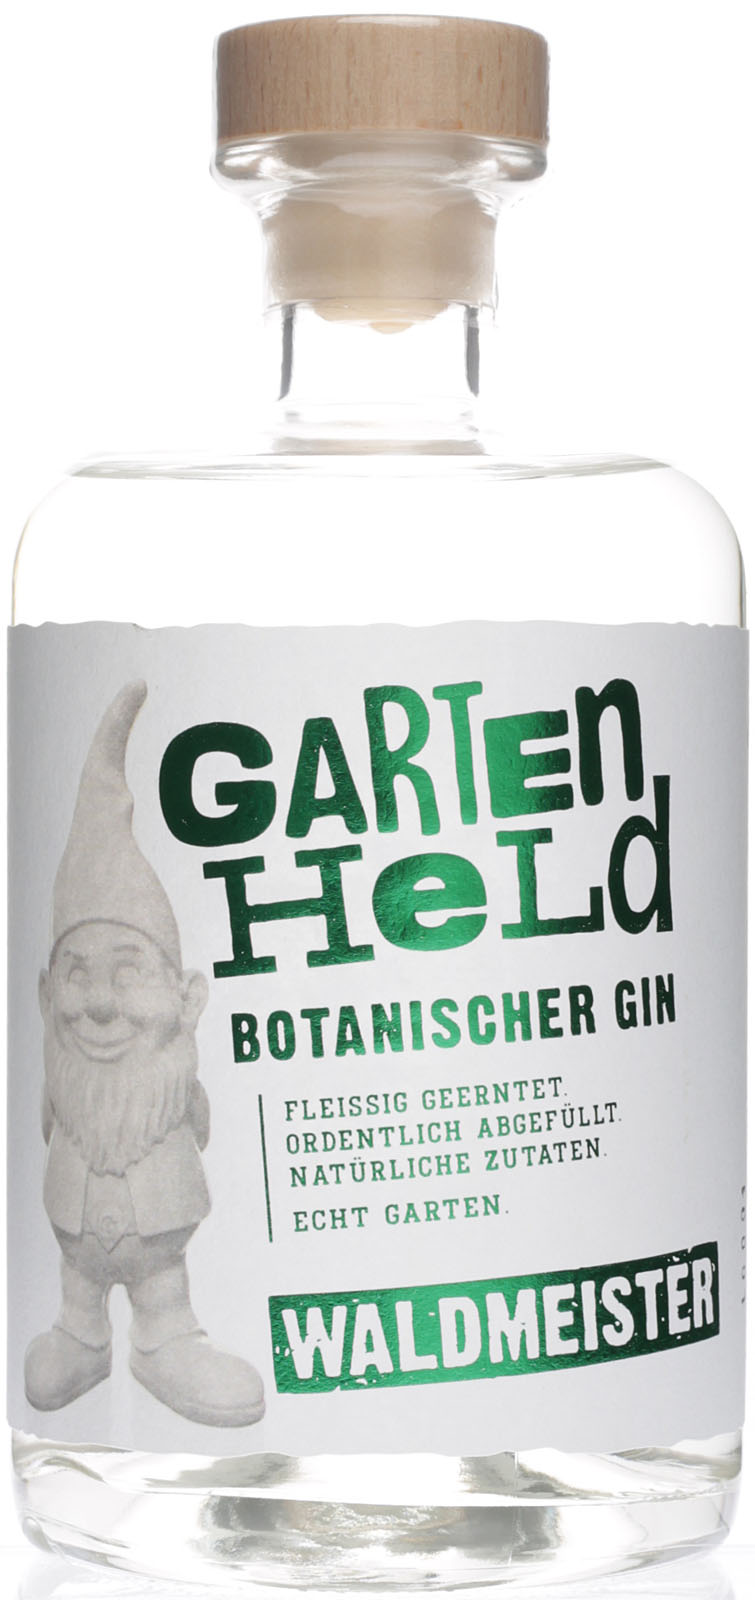 Botanischer Gin im Bei - Gartenheld Sho Waldmeister uns